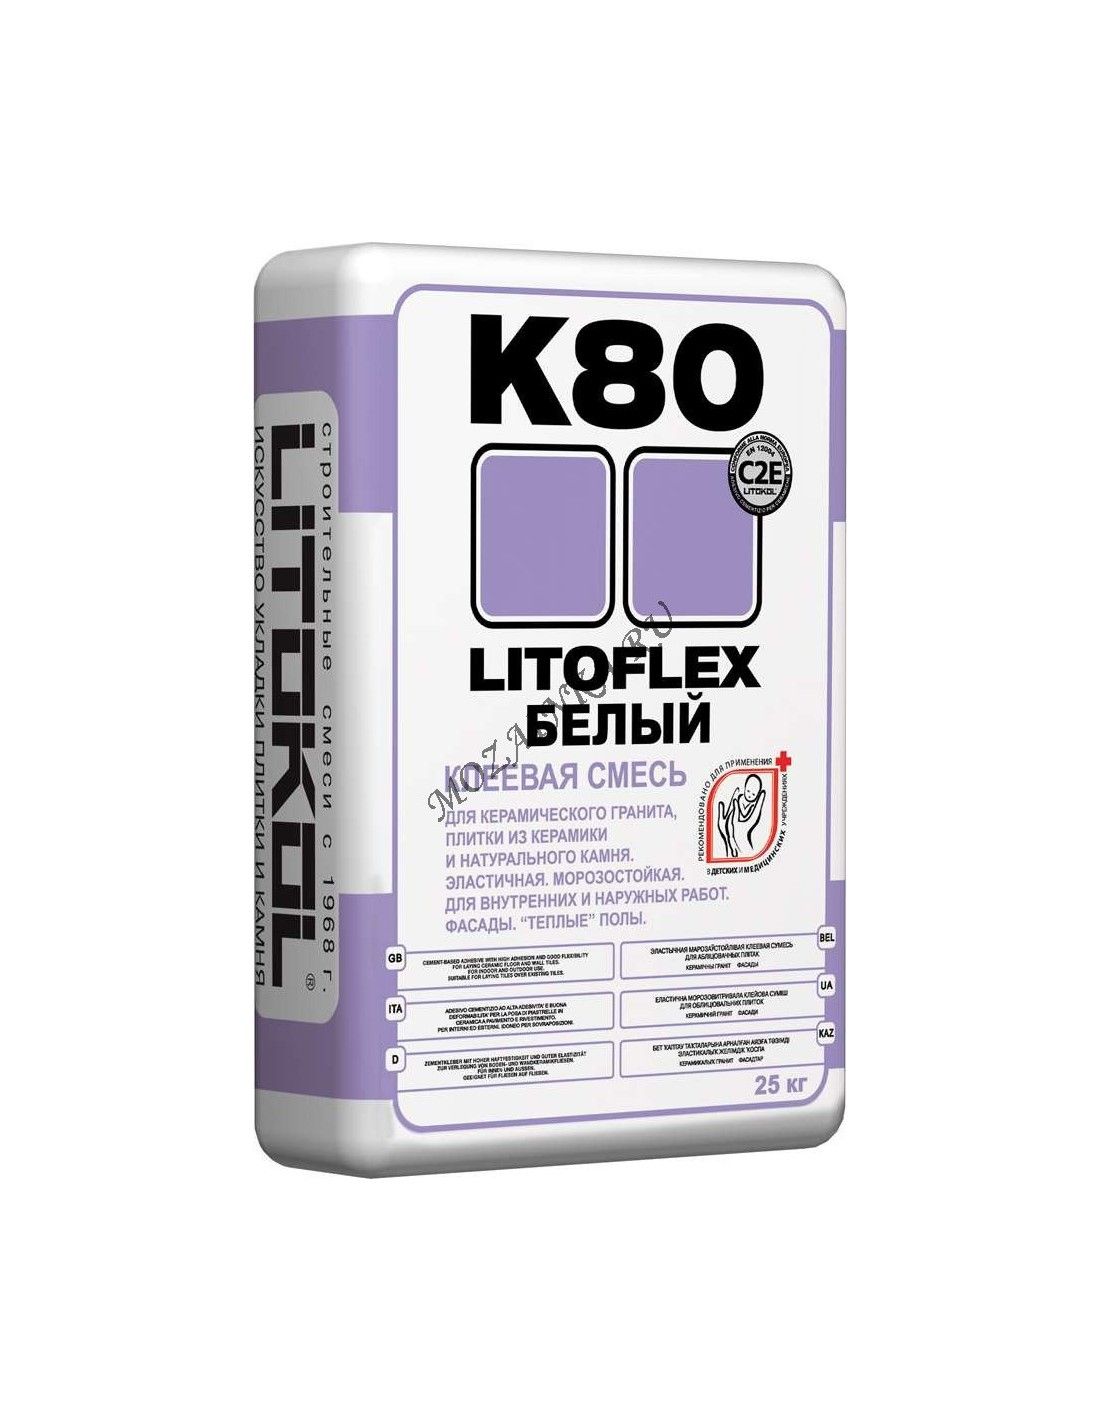 Литокол к 80 цена. Litokol LITOFLEX k80. Клеевая смесь LITOFLEX k80. Клей Литокол к-80. Клей для плитки Литокол к80.